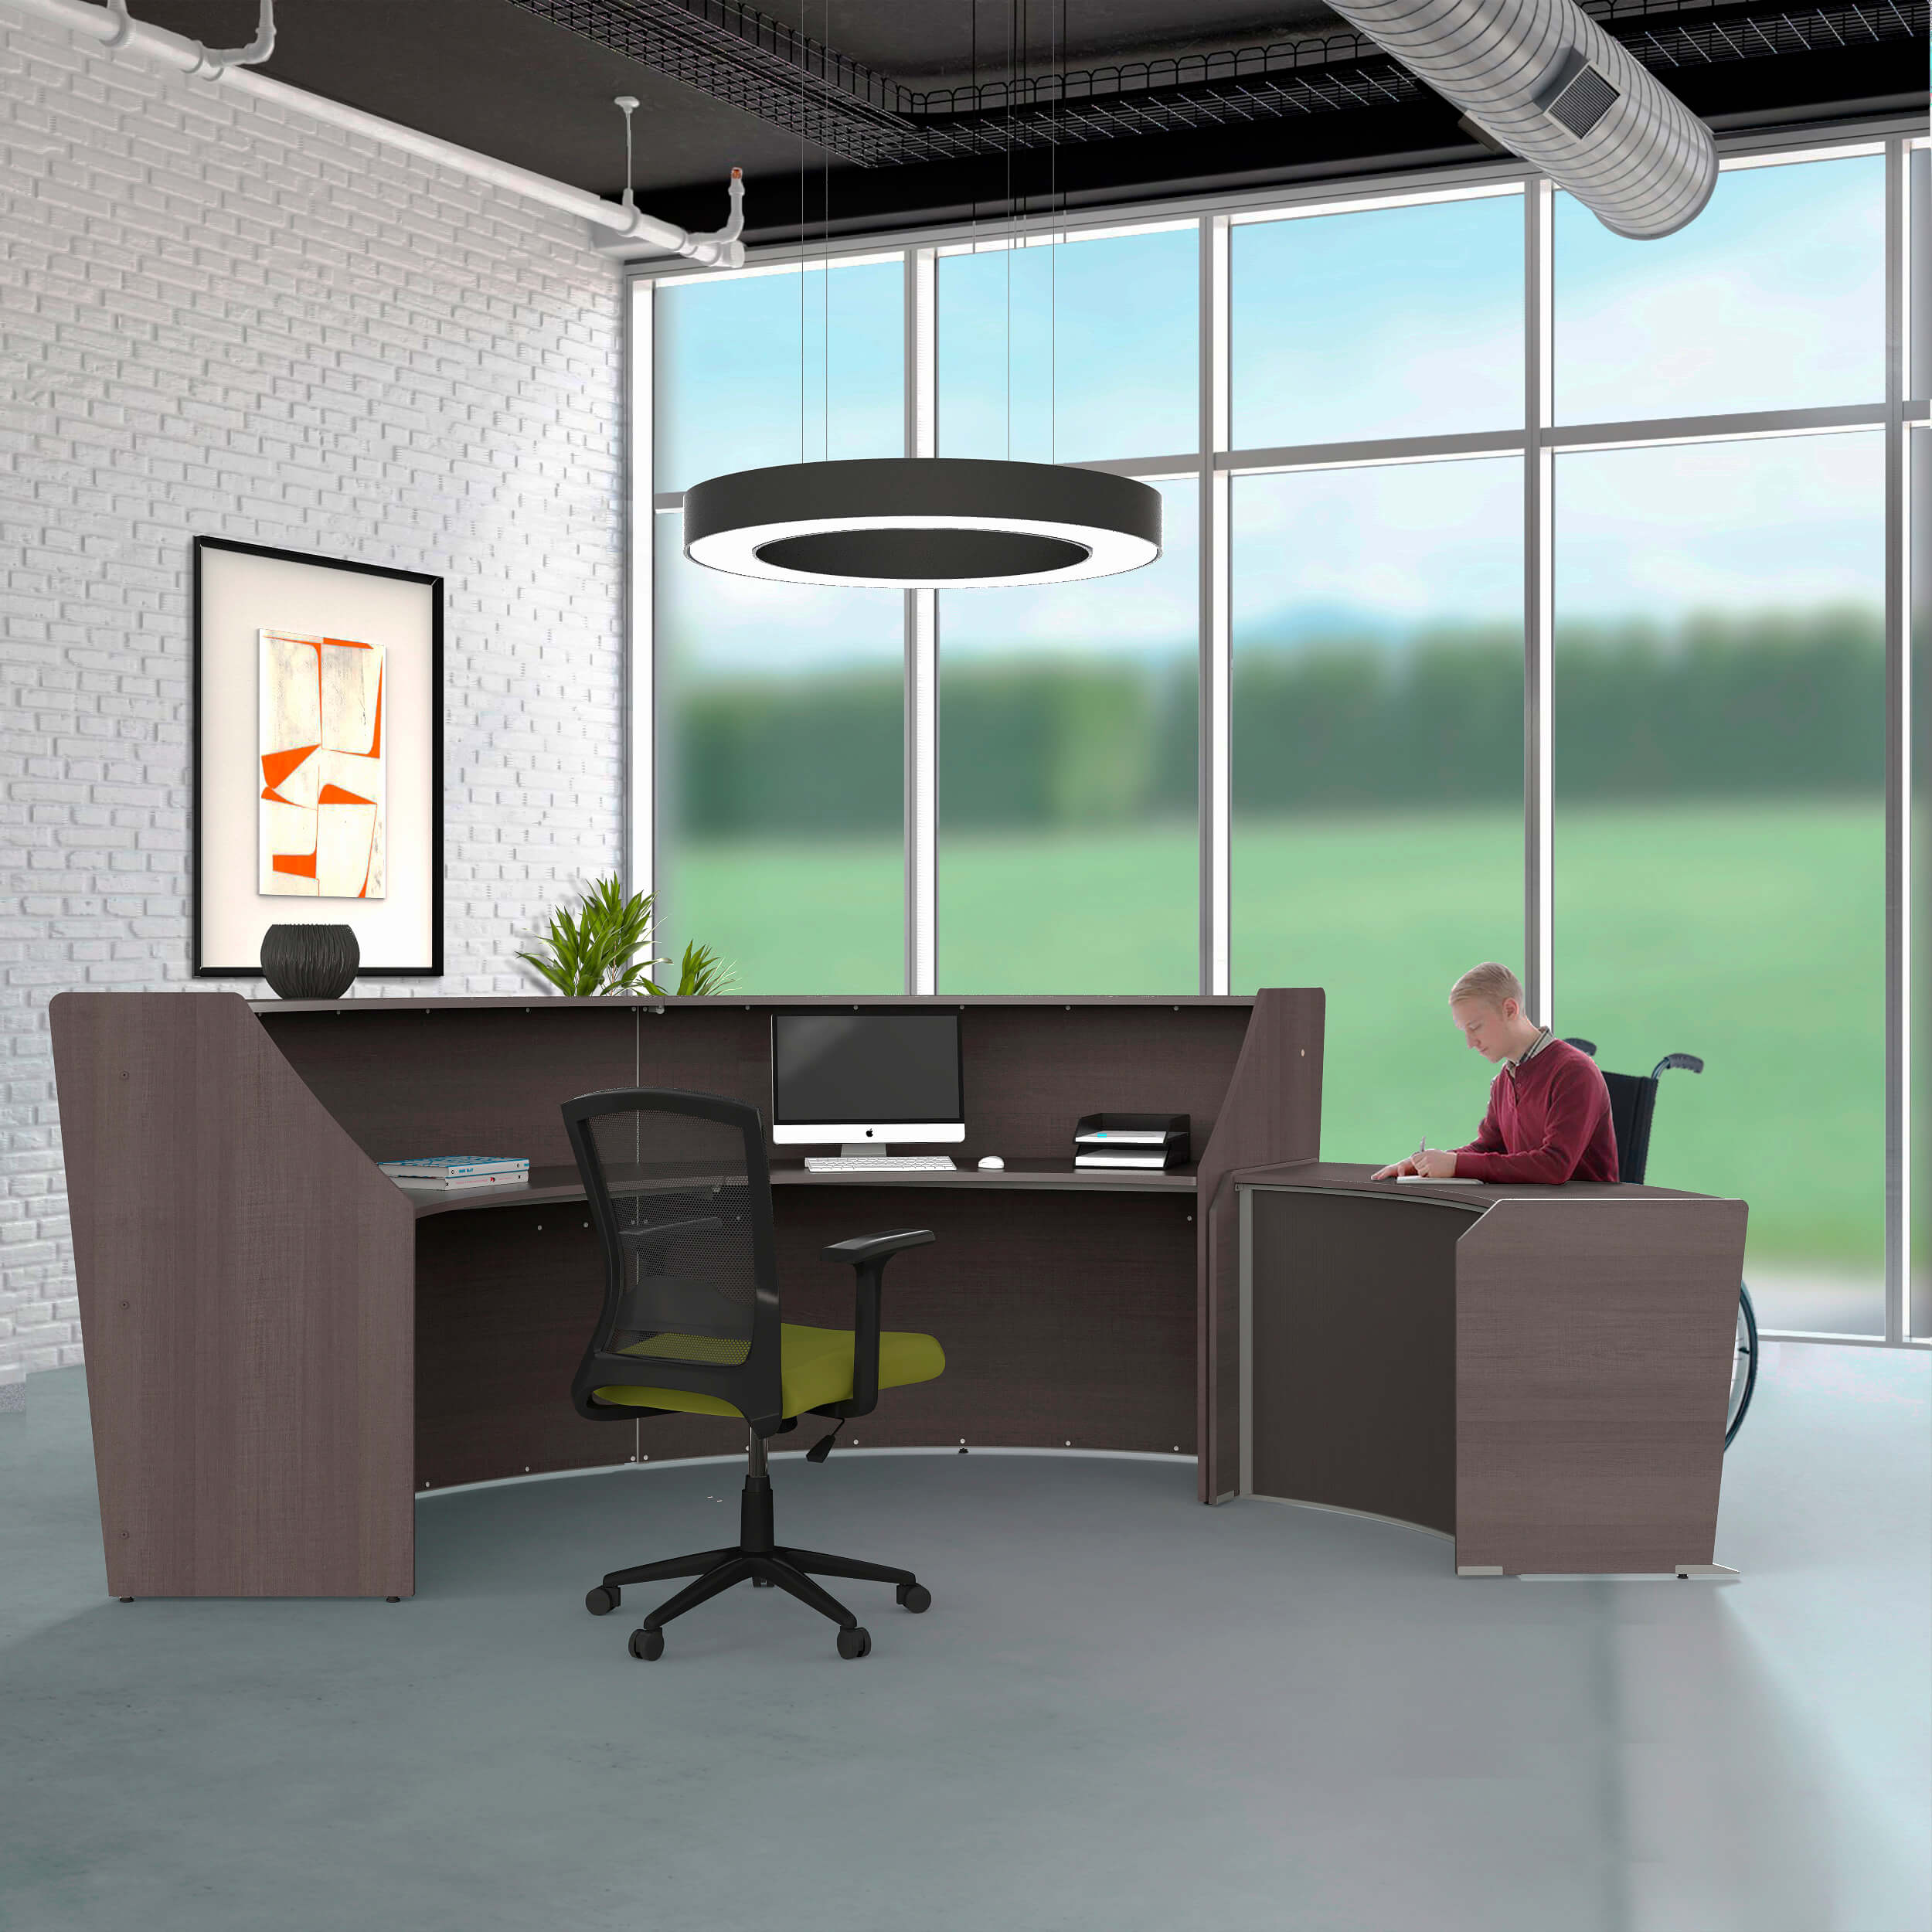 Li1 ada reception desk environment